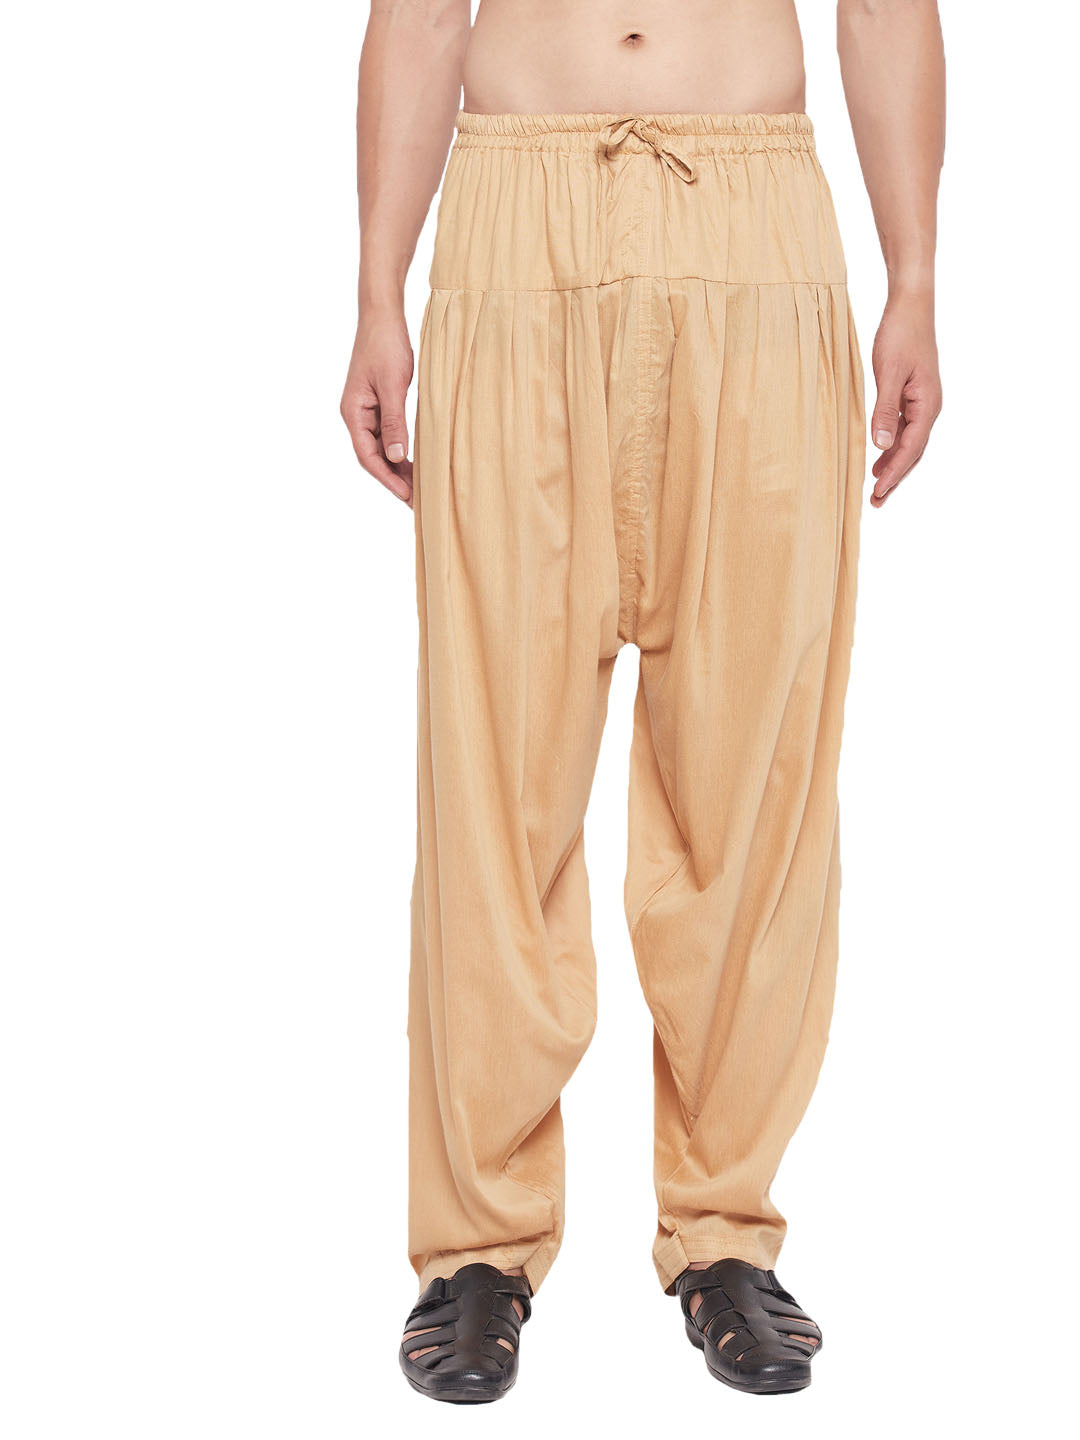 Vastramay Men's Rose Gold - Pyjama - Distacart